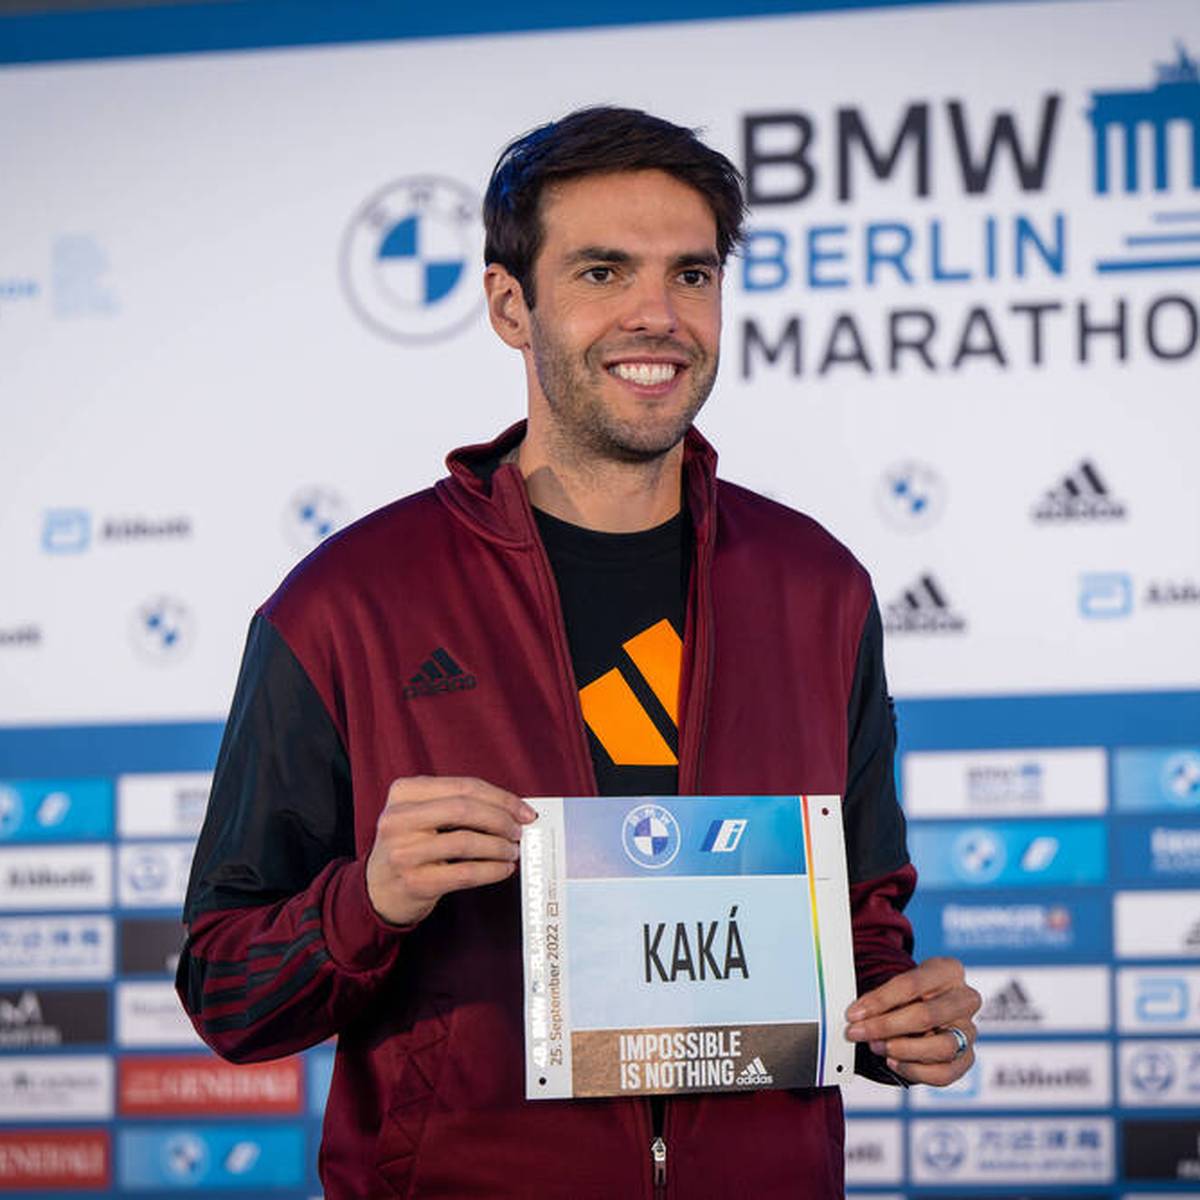 Der ehemalige Weltfußballer Kaká zeigt sich beim Berlin-Marathon in guter Form. Sein selbstgestecktes Ziel kann der Brasilianer sogar unterbieten.